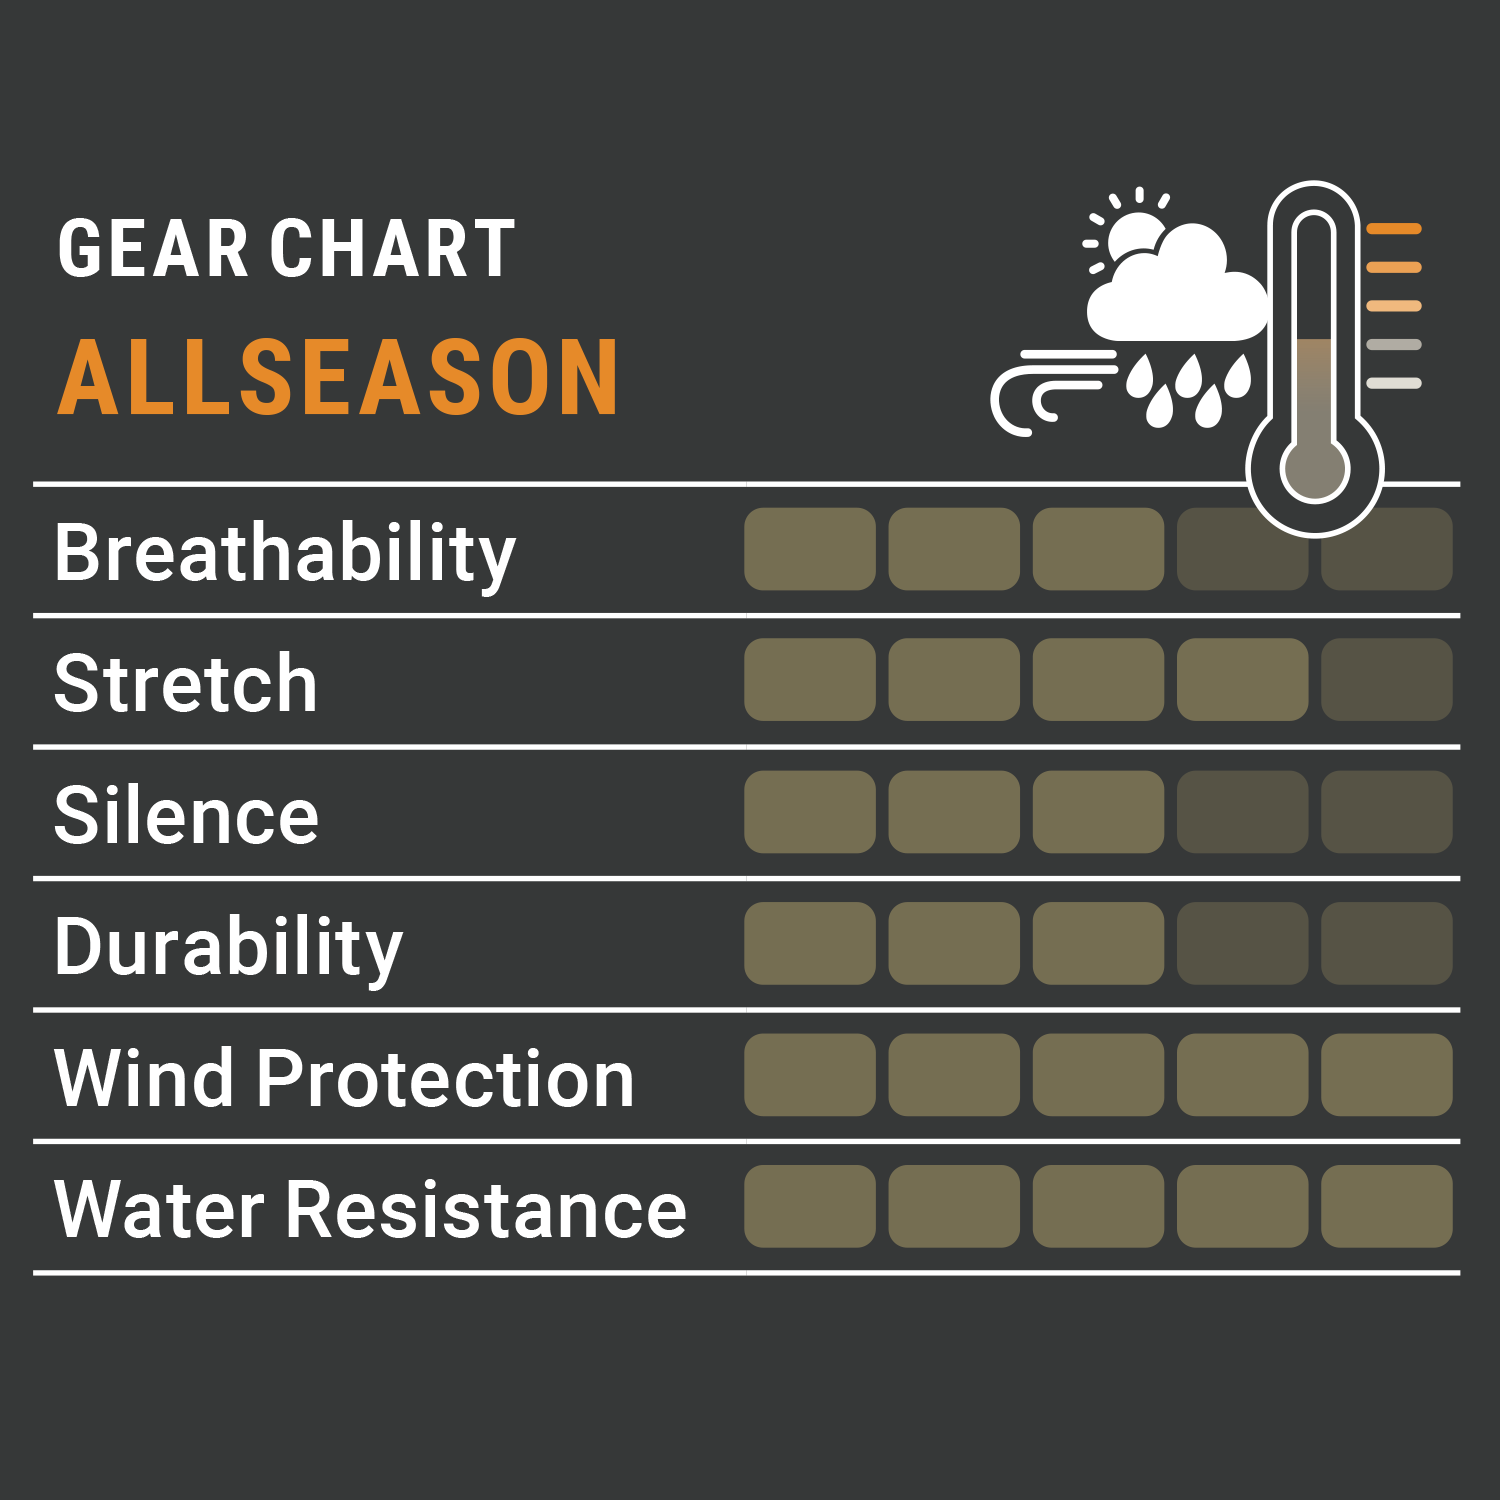  Pirscher Gear Allseason Jas (Optimax)